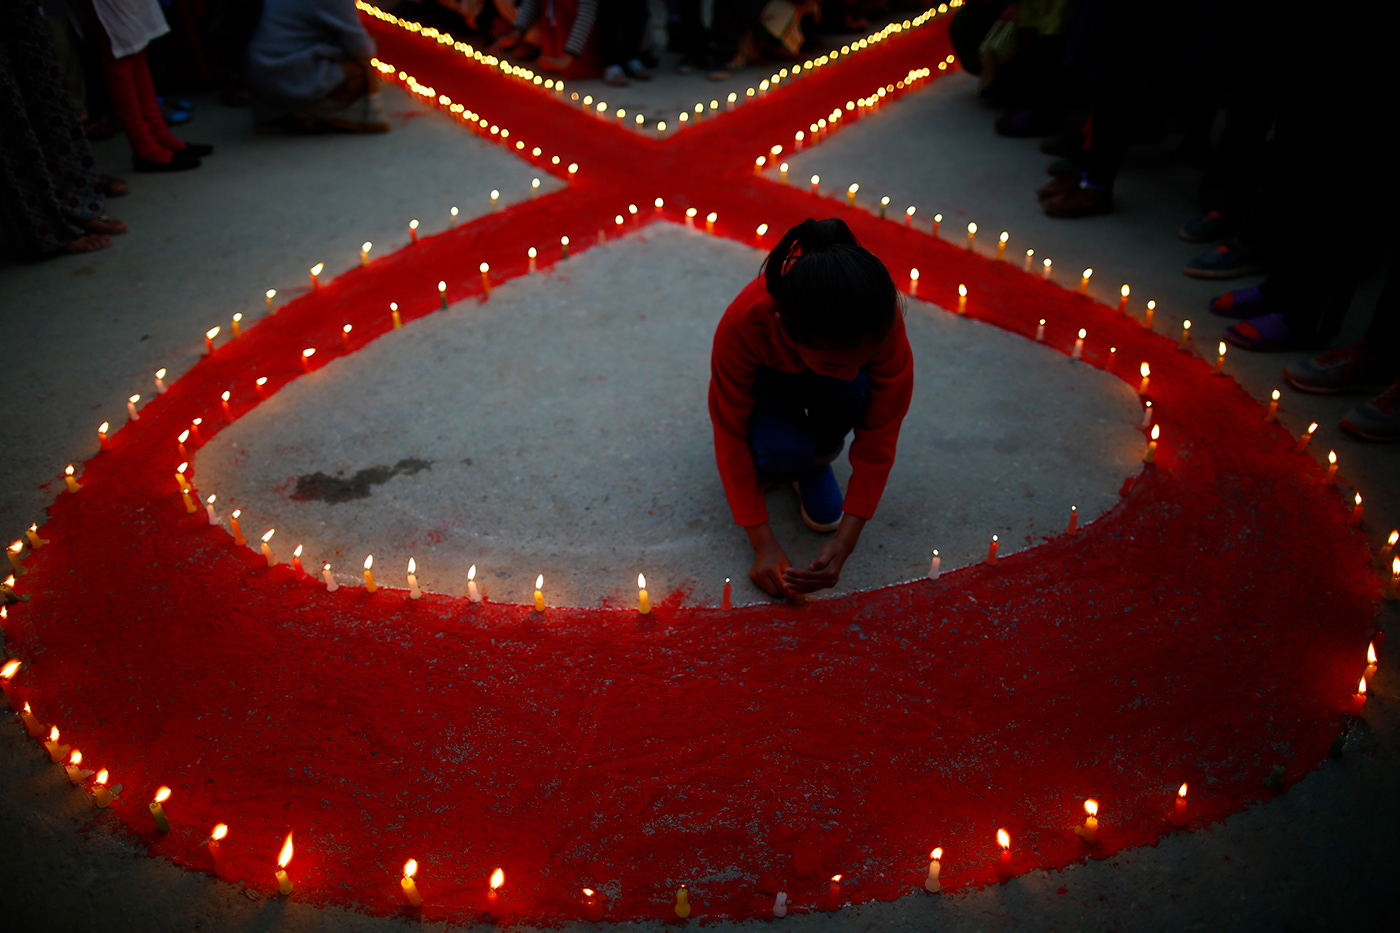 nepal kathmandu asia nepalese people candles redribbon worldAIDSday hiv awareness